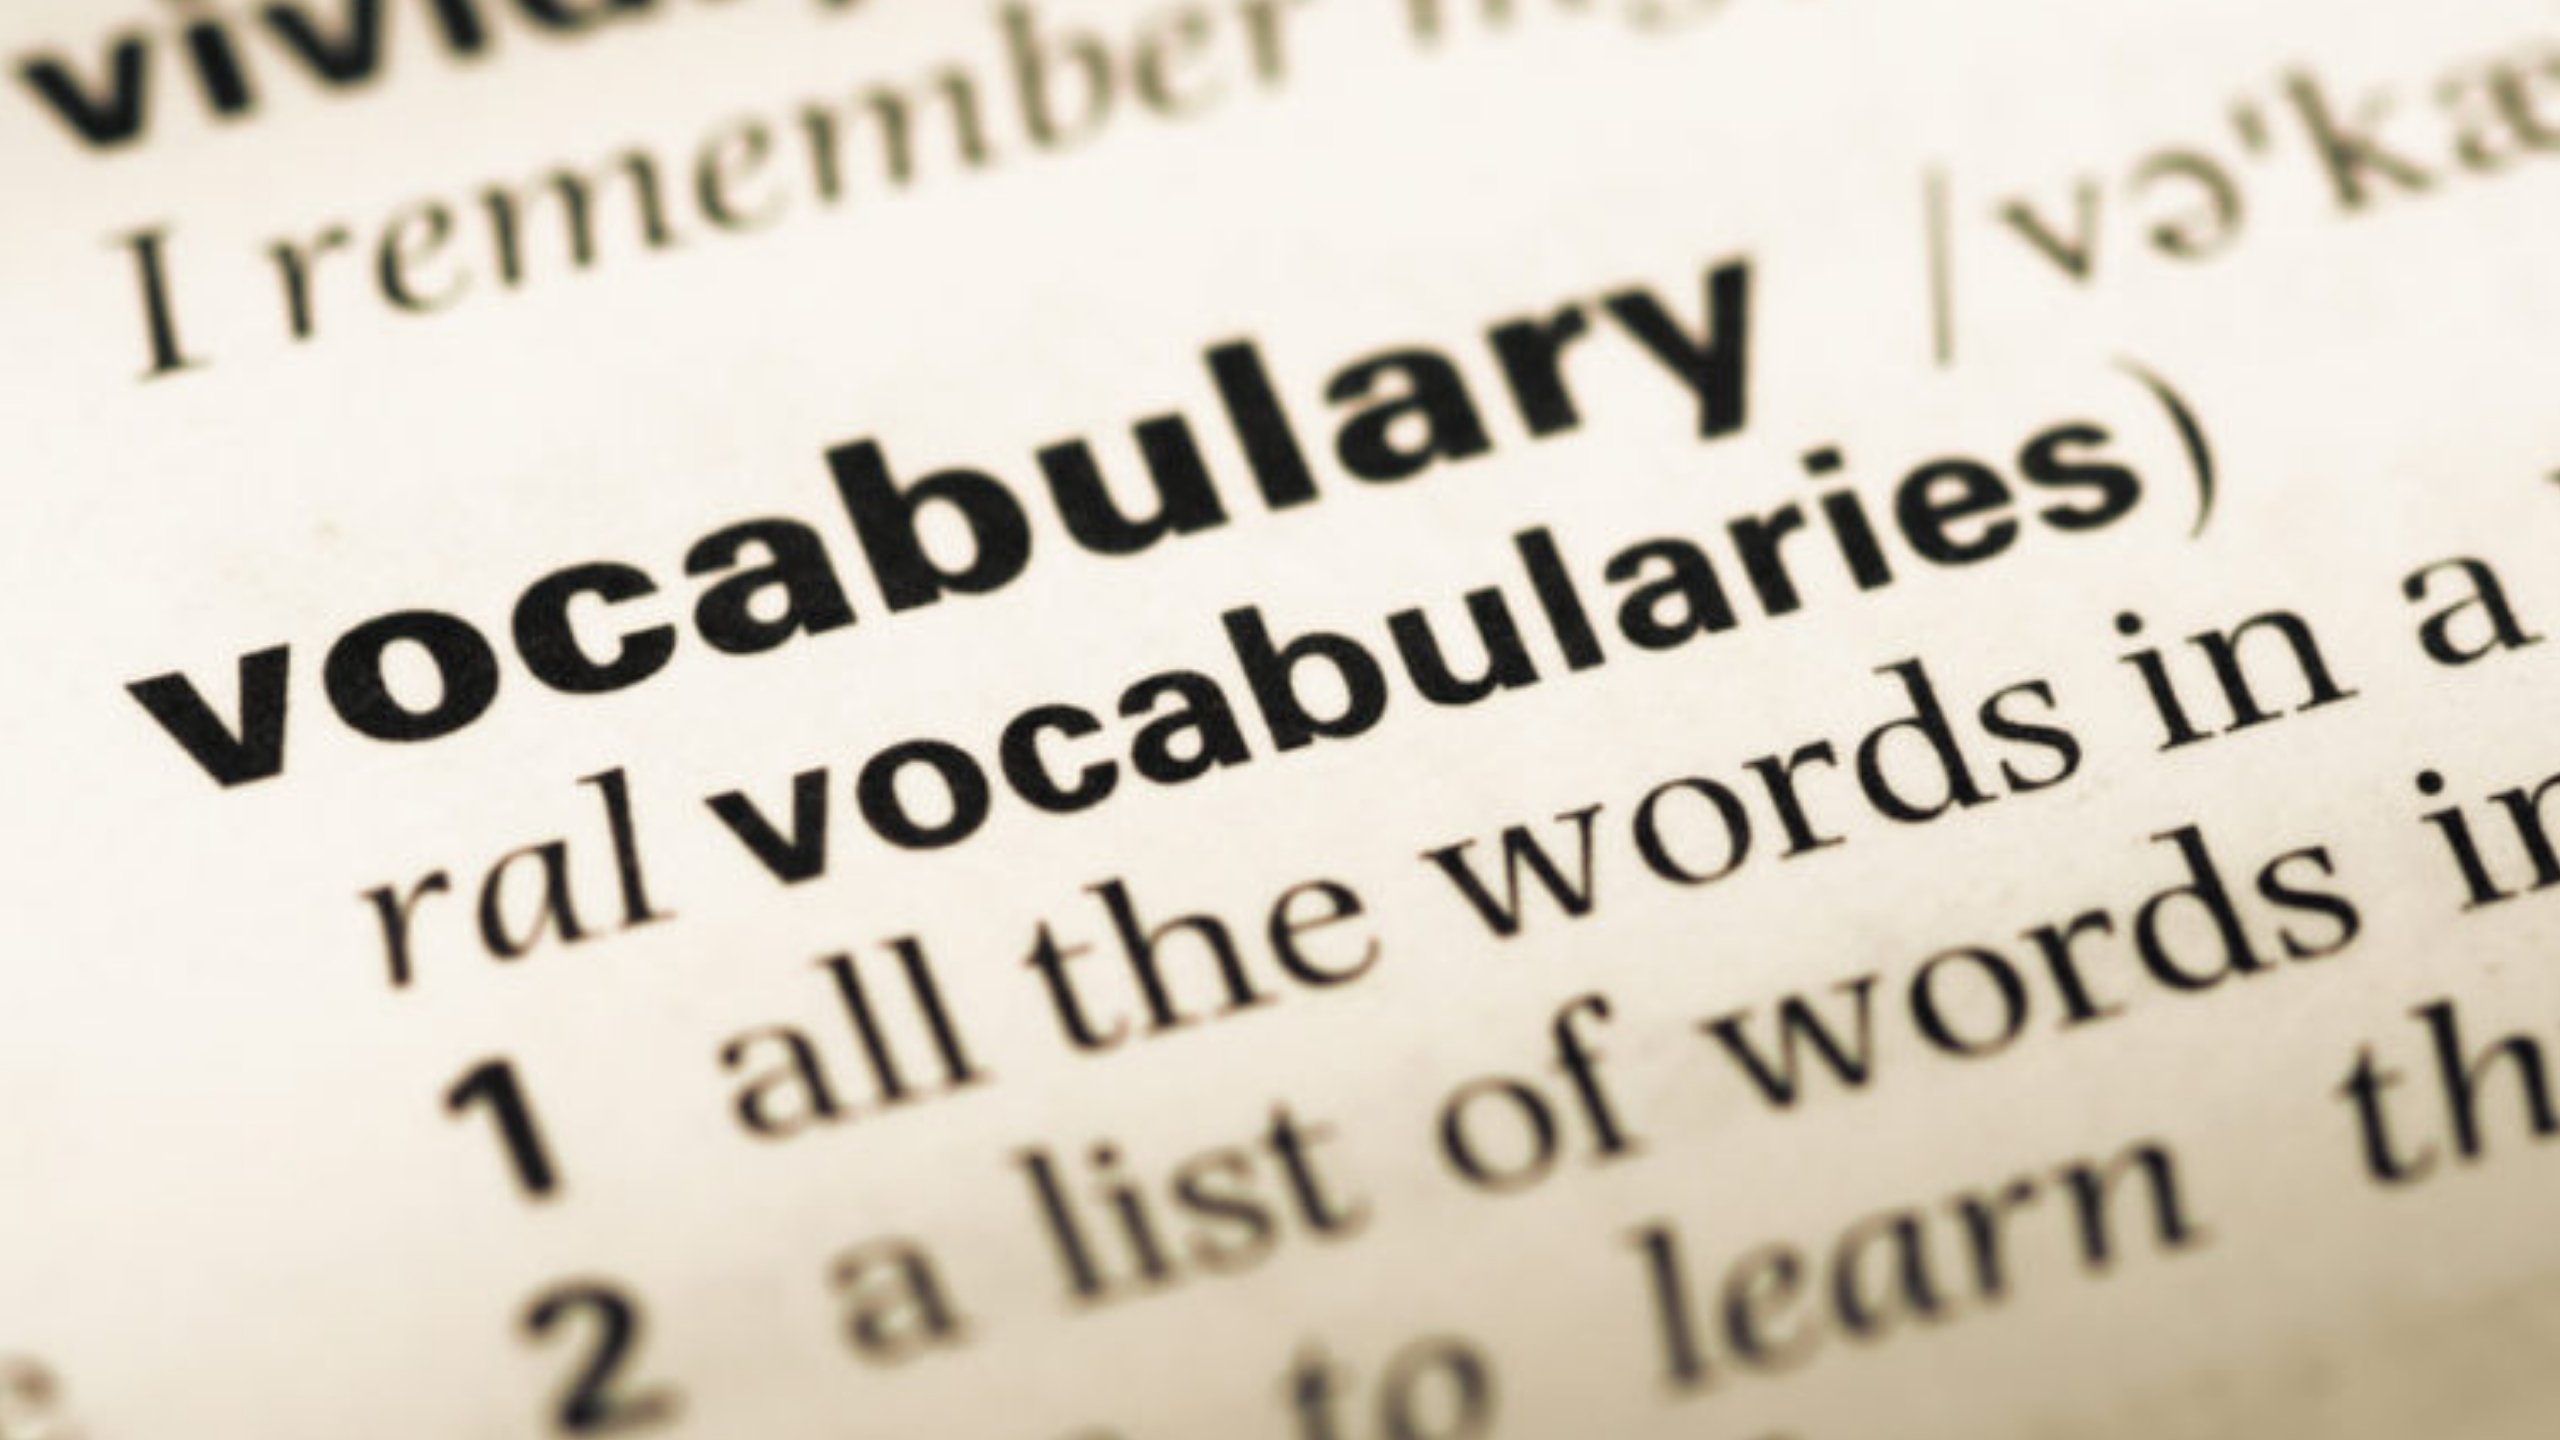 vocabularies